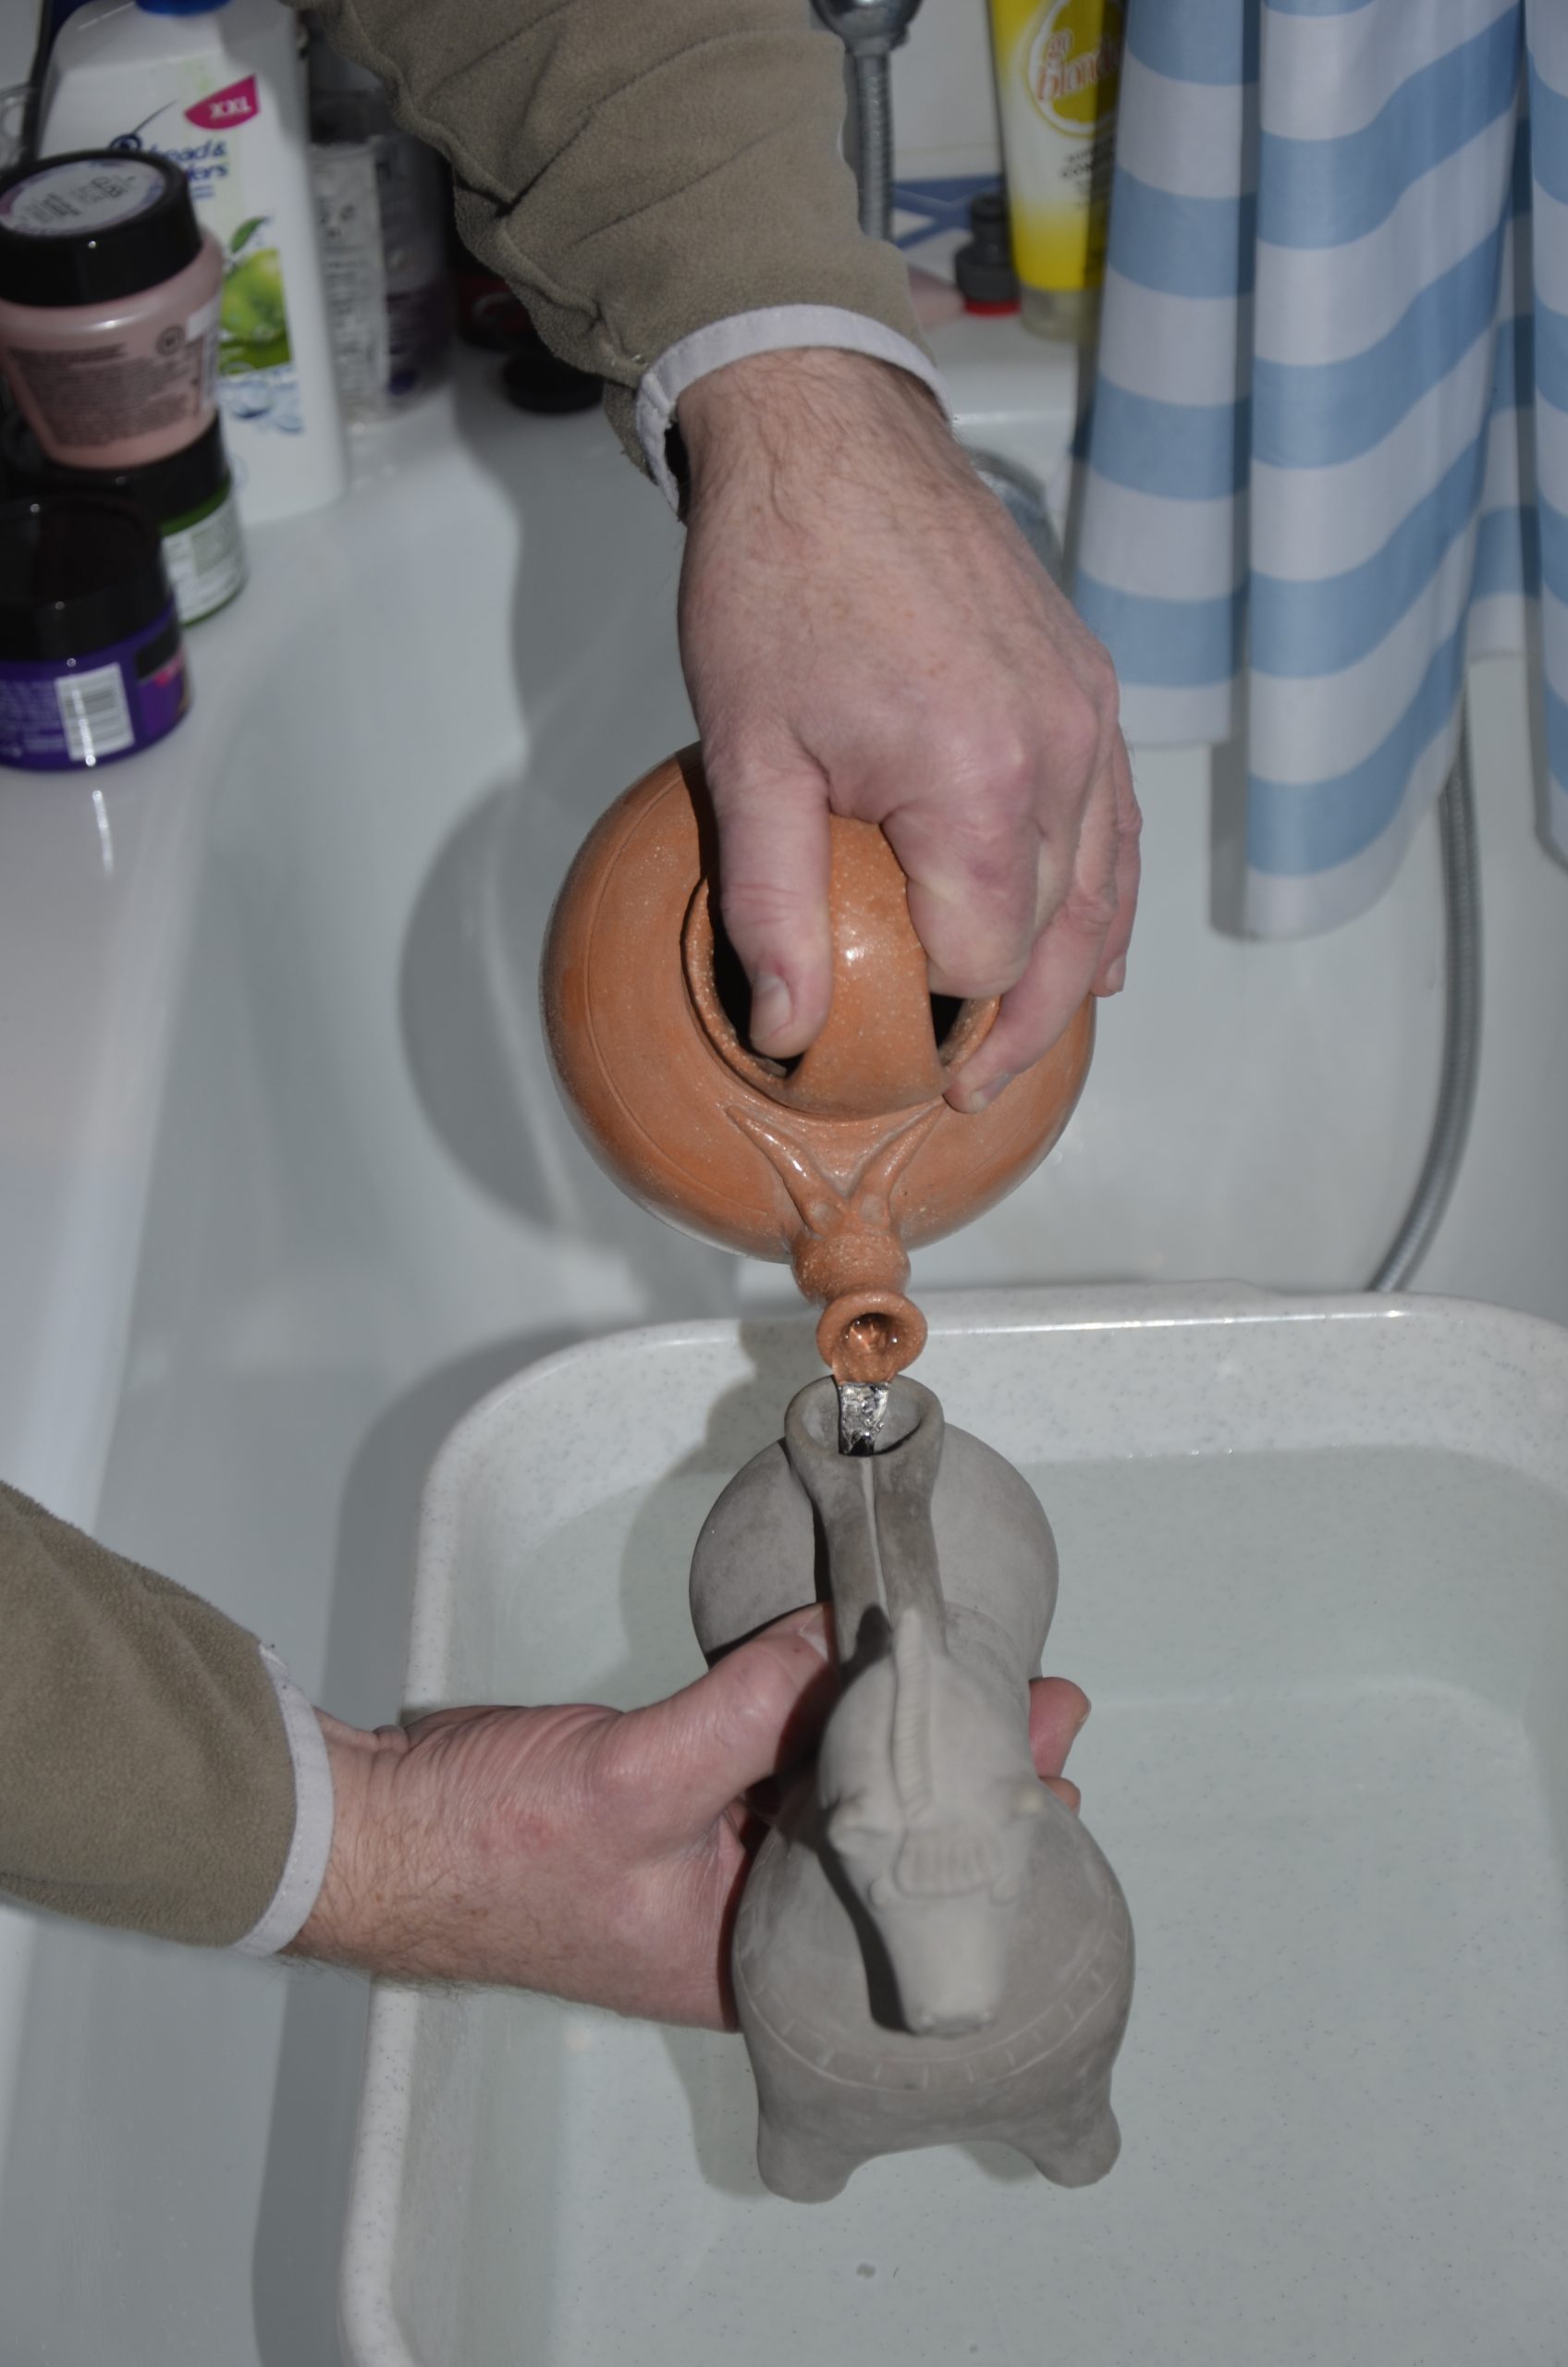 Abb. 12: Befüllen des Keramik-Aquamanile mit der Bügelkanne durch eine Person. Foto: Thomas Kühtreiber.